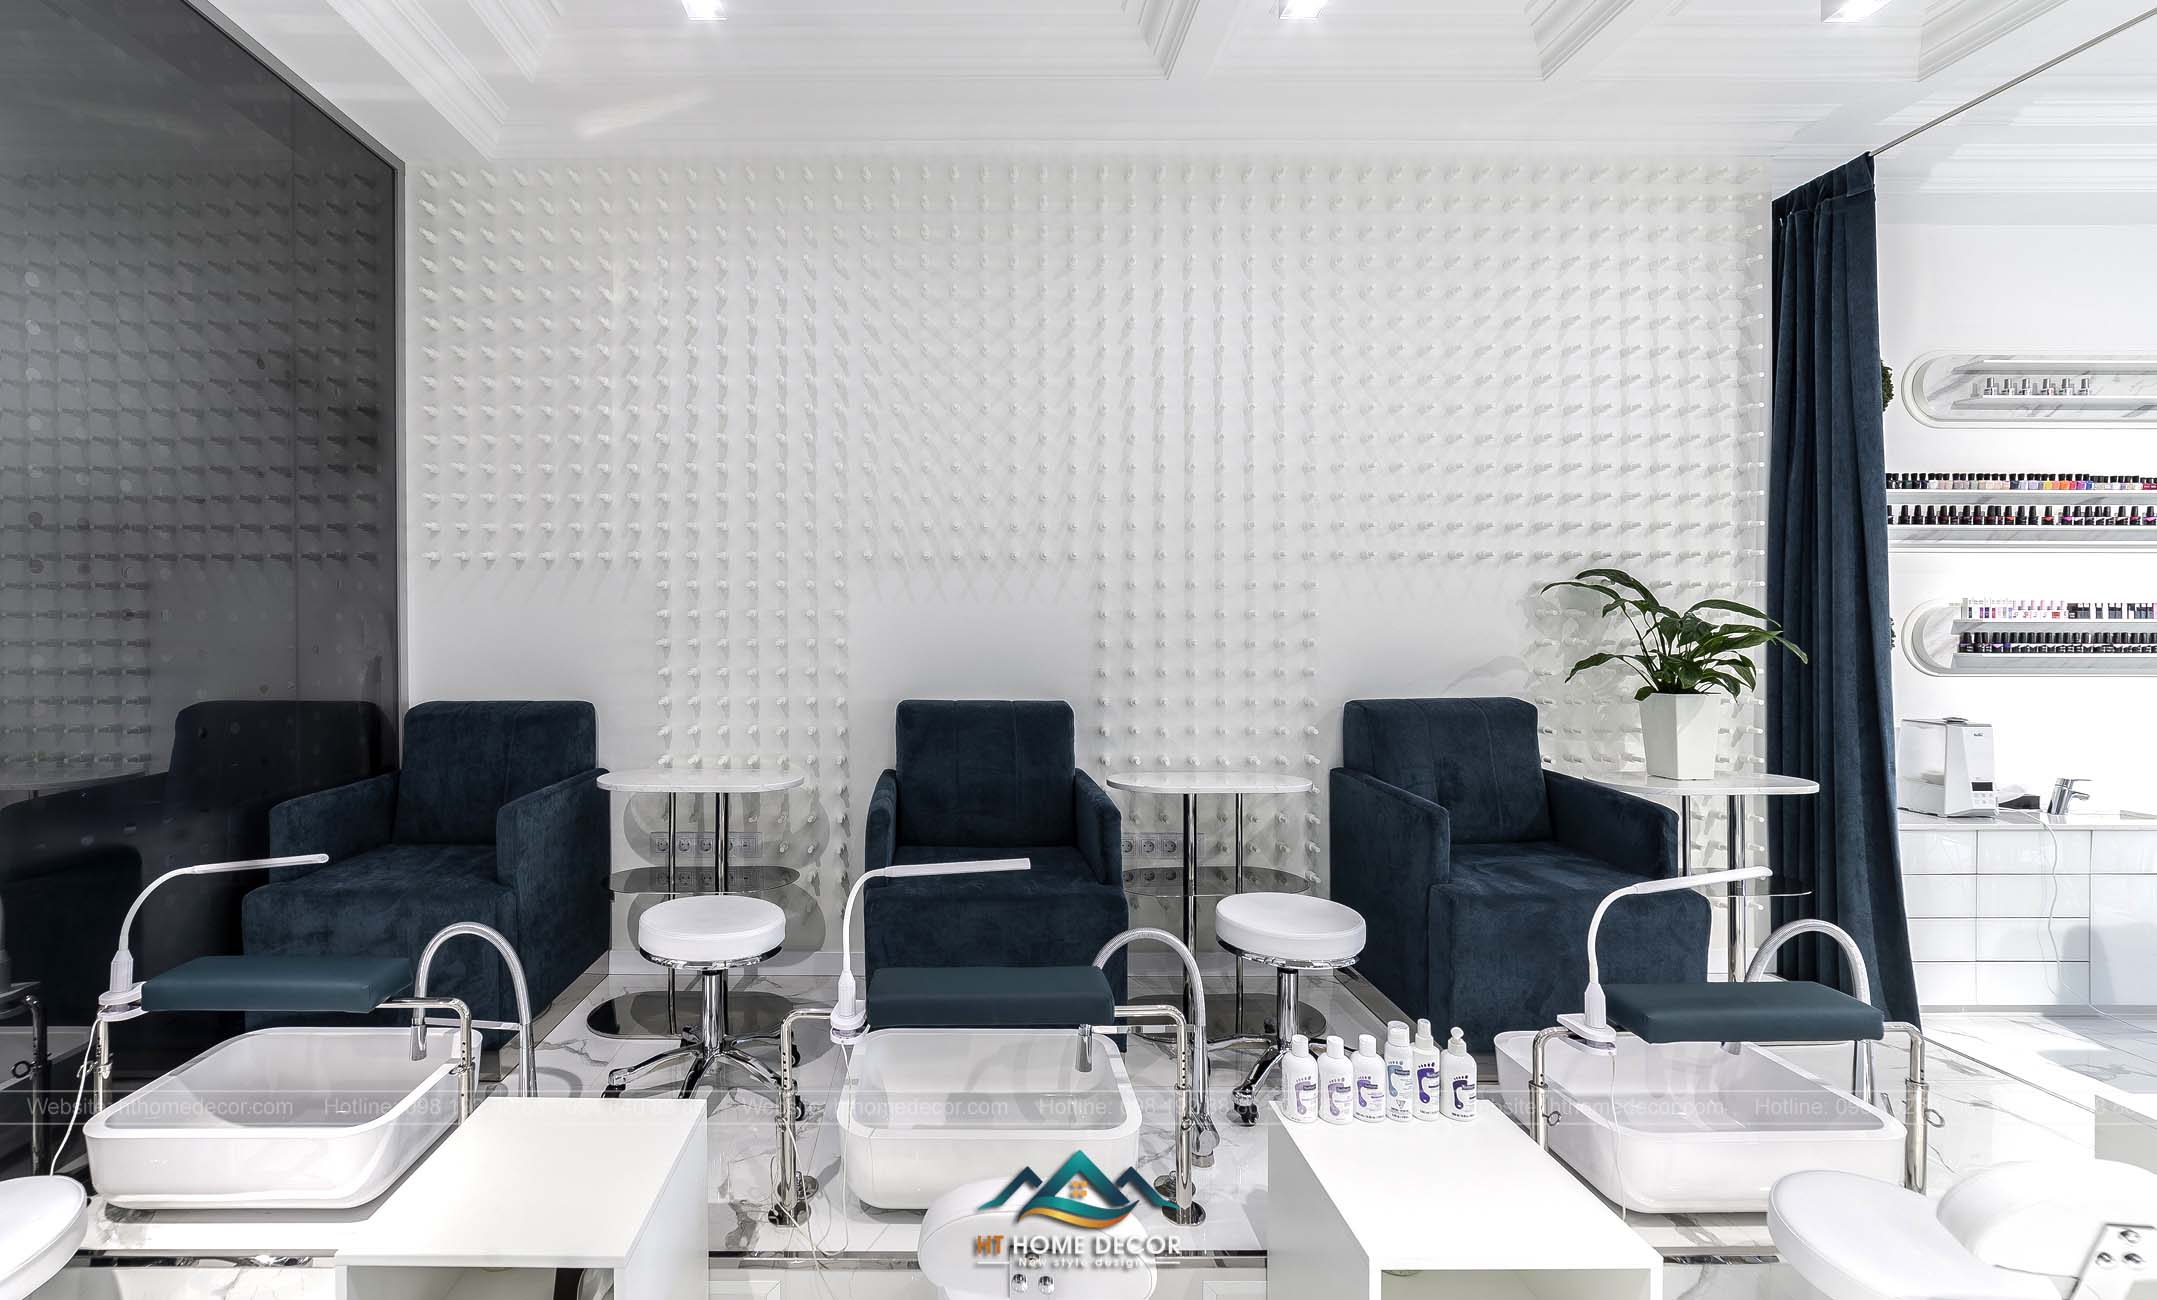 Bức tường cá tính là điểm nhấn của nail studio. Có rèm che đảm bảo không gian riêng tư cho từng khách hàng ngồi ở những khu vực khác nhau.